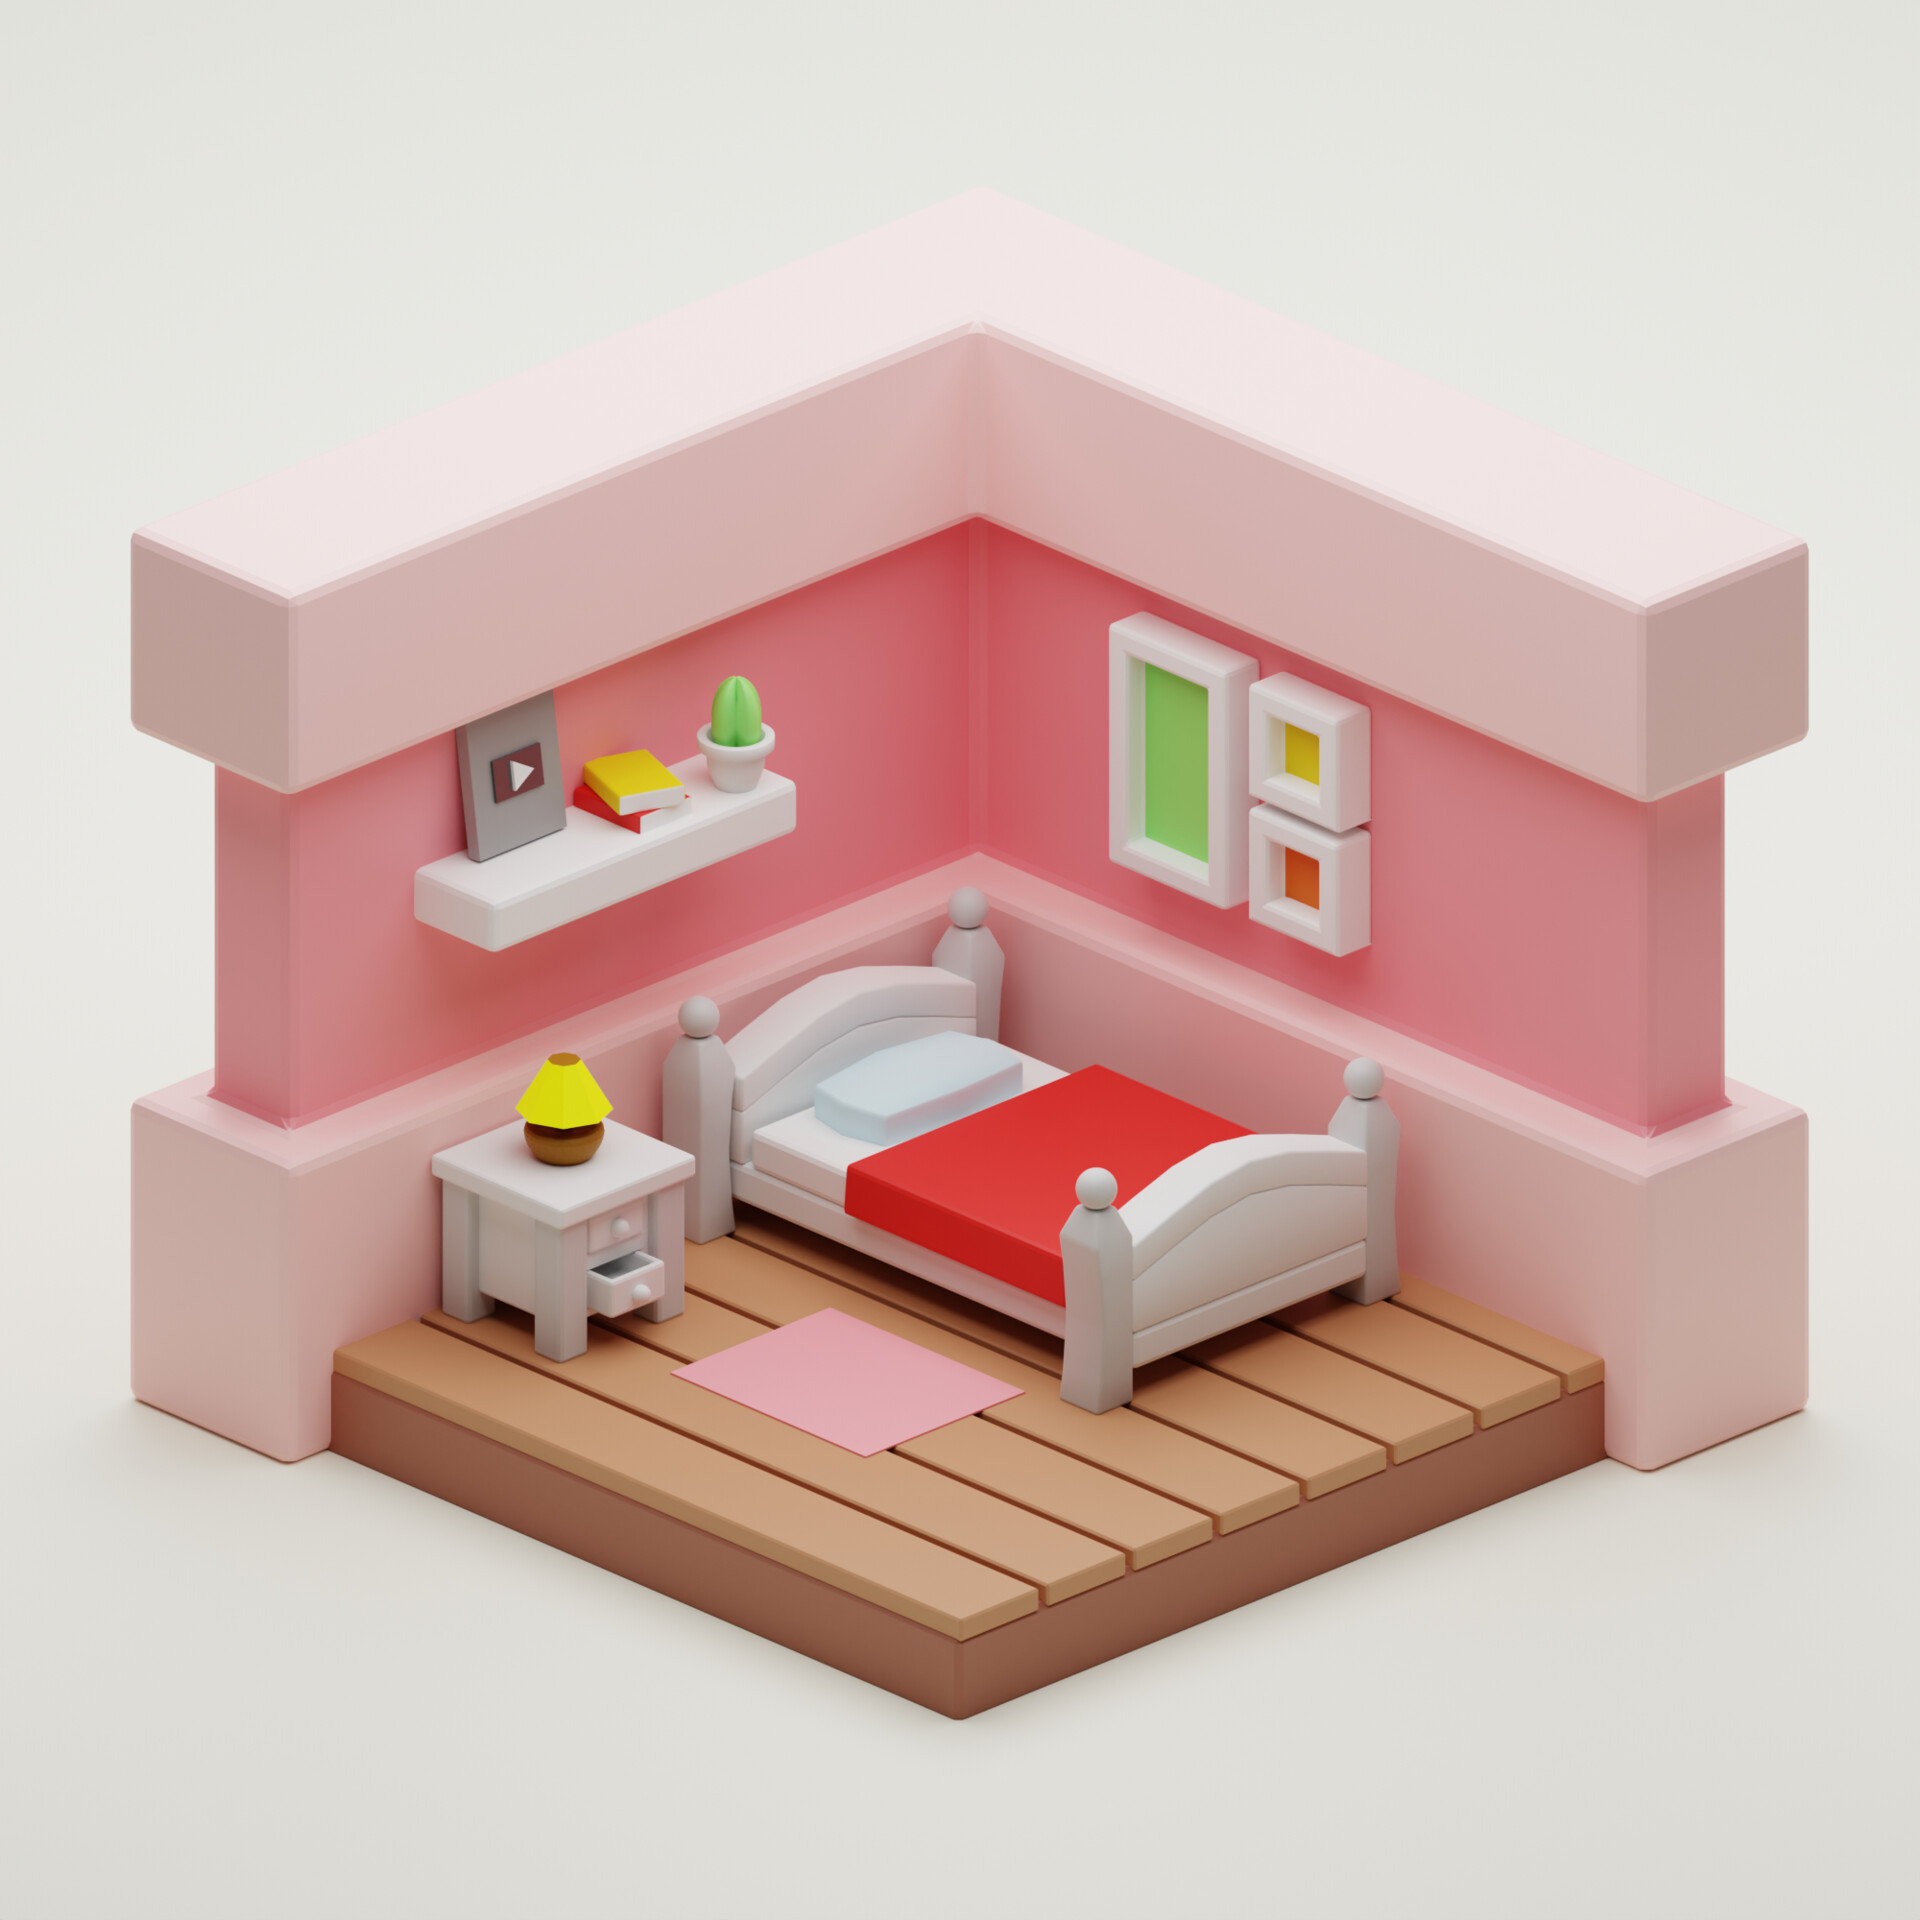 ArtStation - Cute Bedroom in Blender